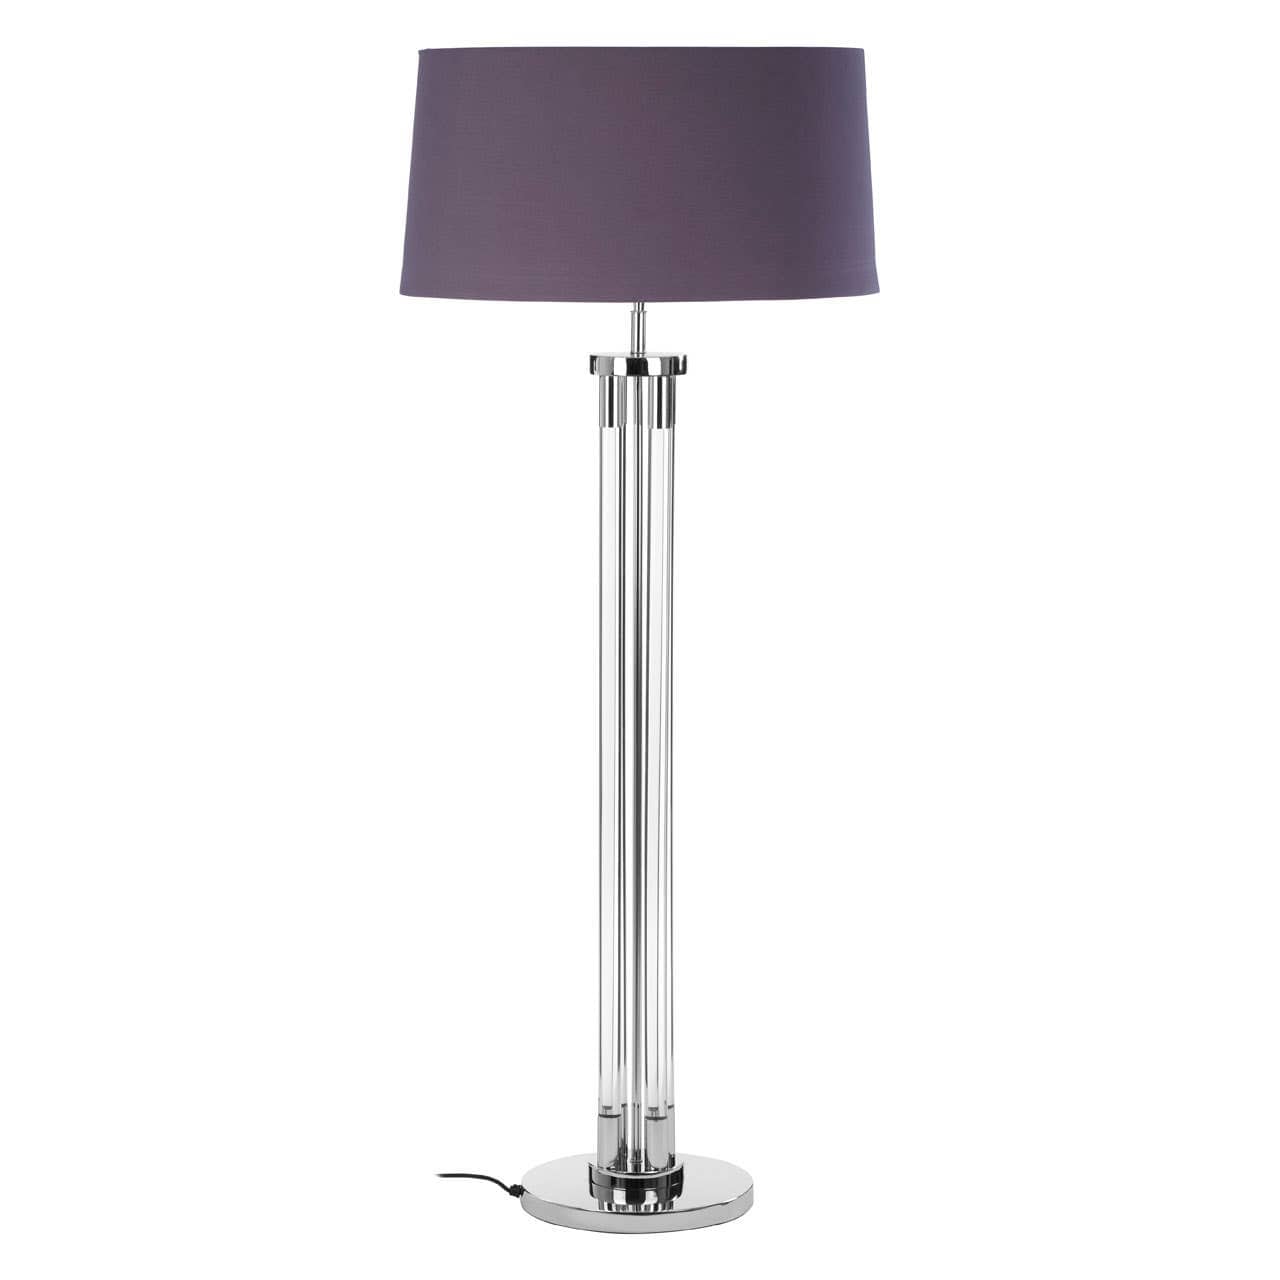 Noosa & Co. Lighting Skye Tall Acrylic / Tubular Base Floor Lamp House of Isabella UK